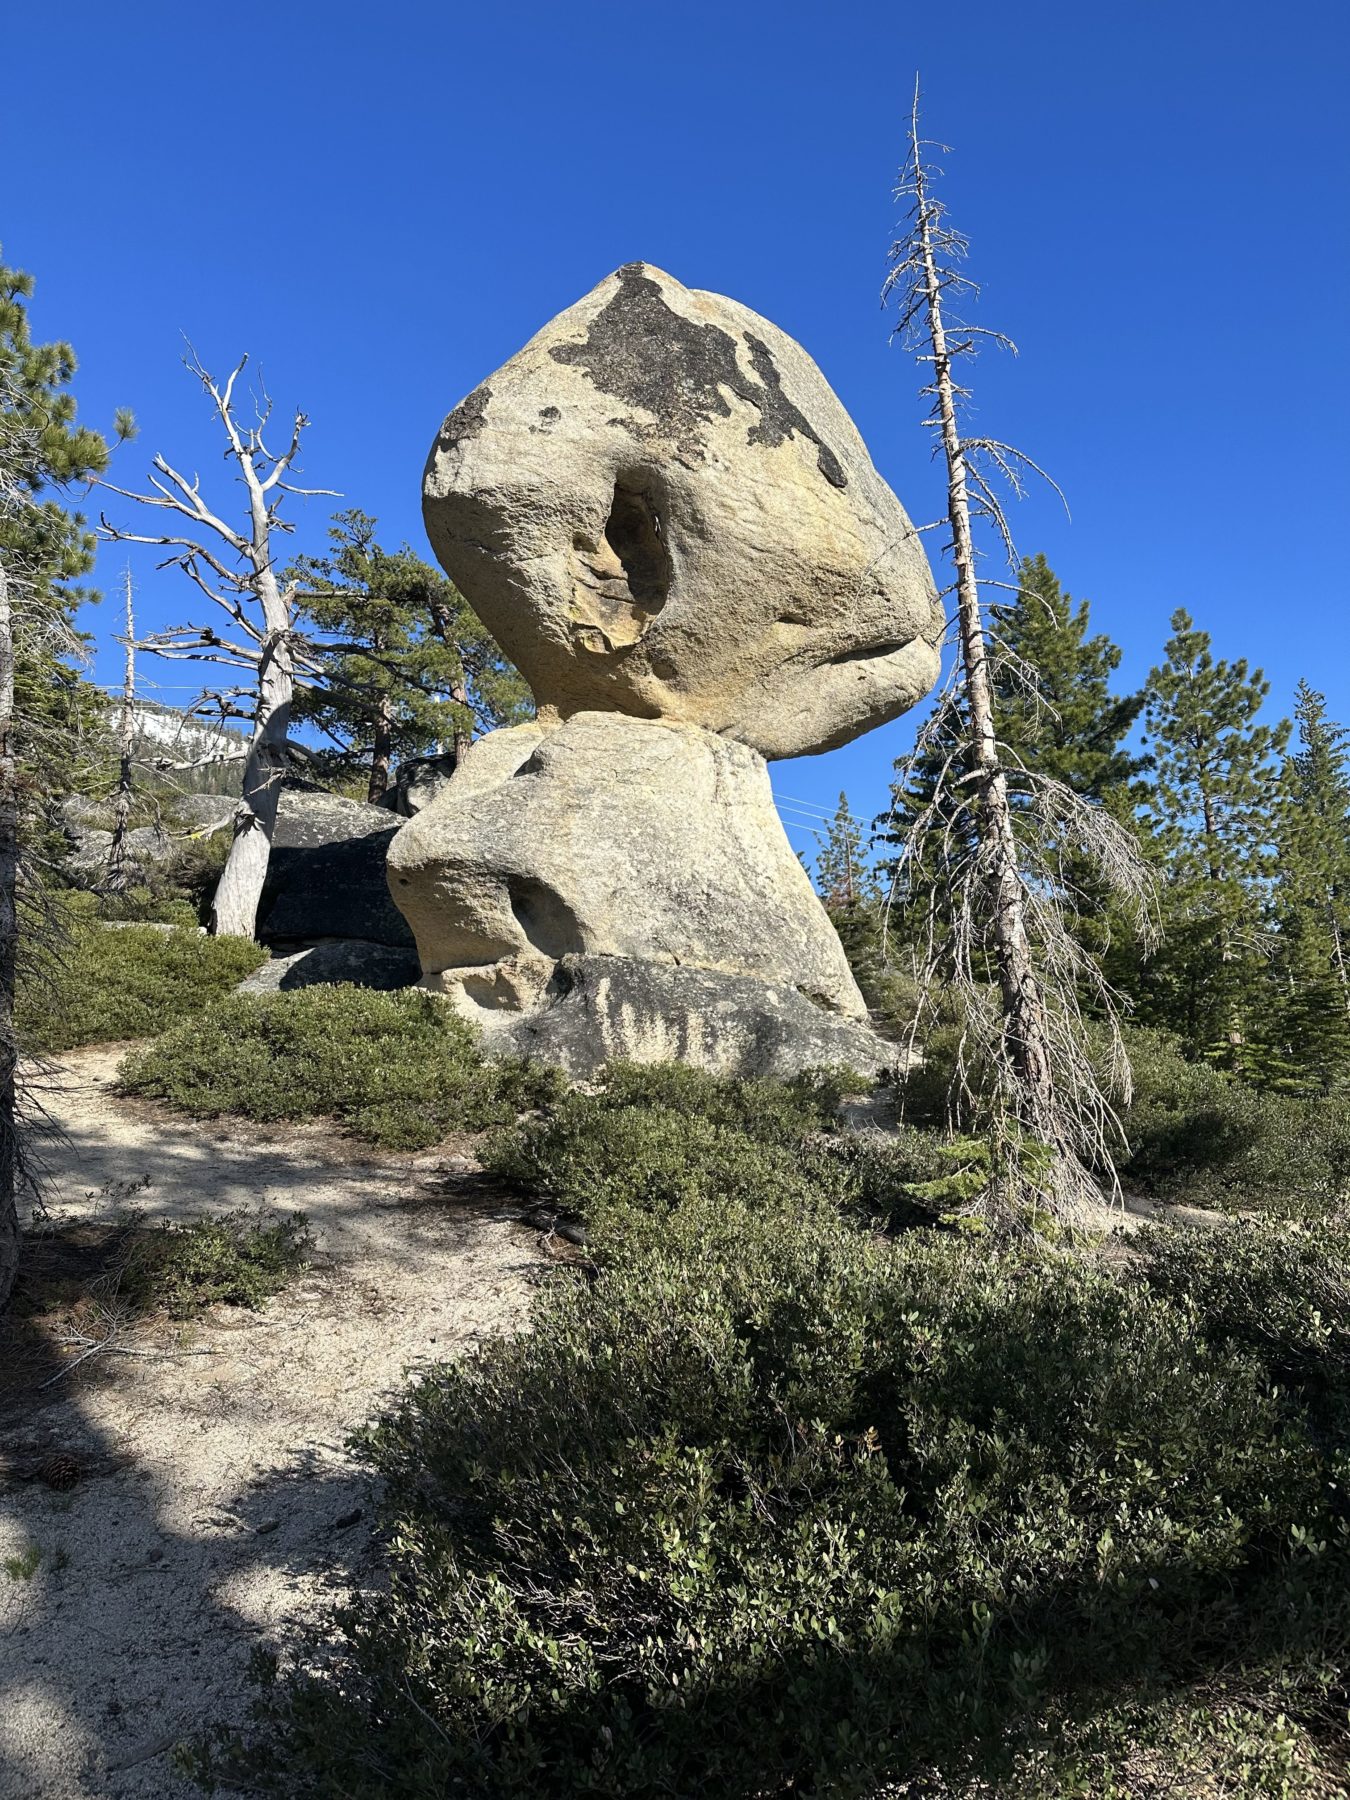 Best hikes in Tahoe - Balancing Rock